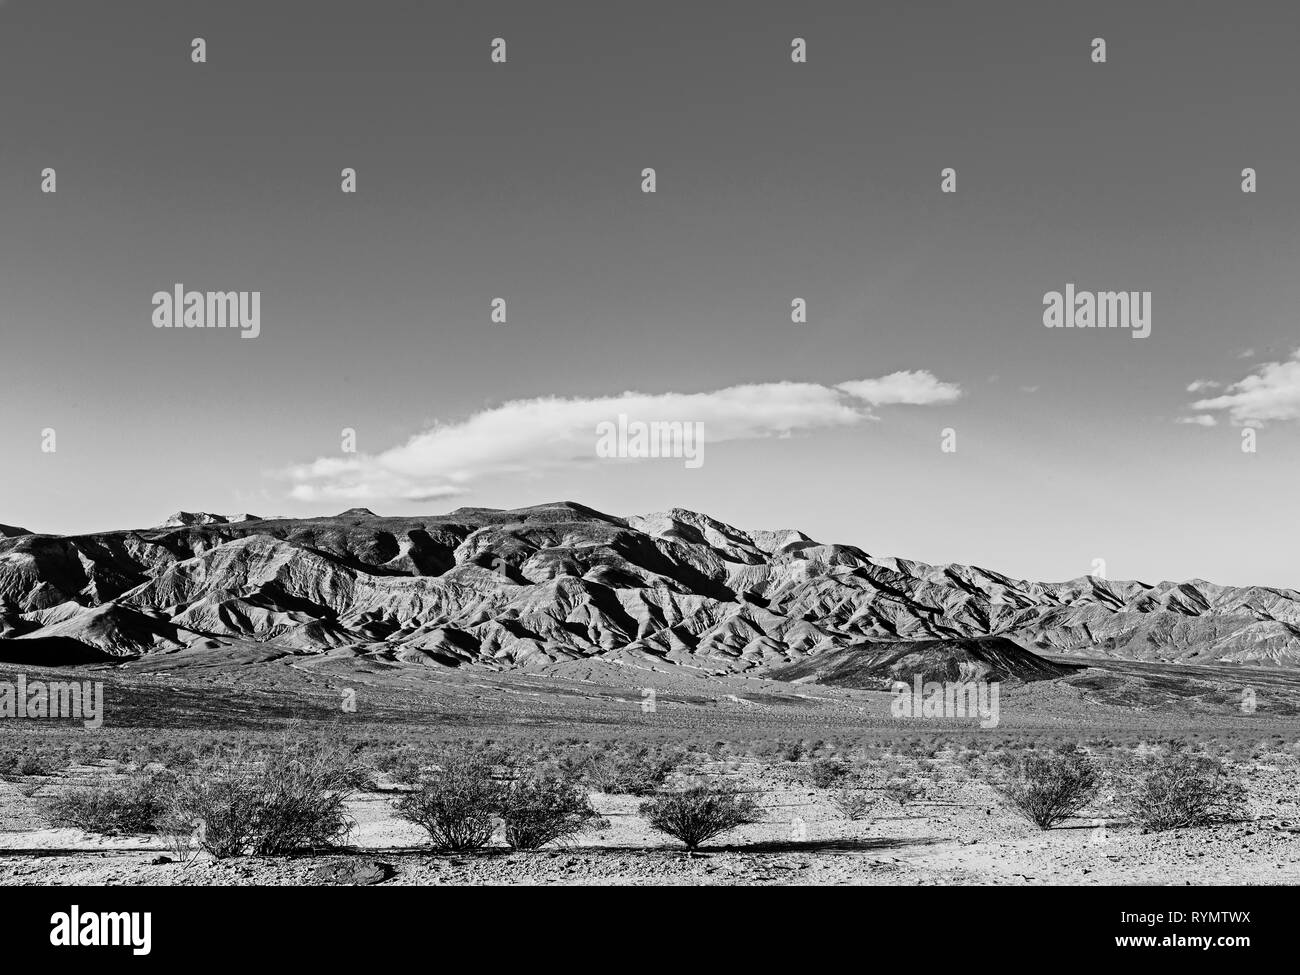 Désert de sable vallée avec pinceau mort montagnes arides et rocheux au-delà. Noir et blanc. Banque D'Images